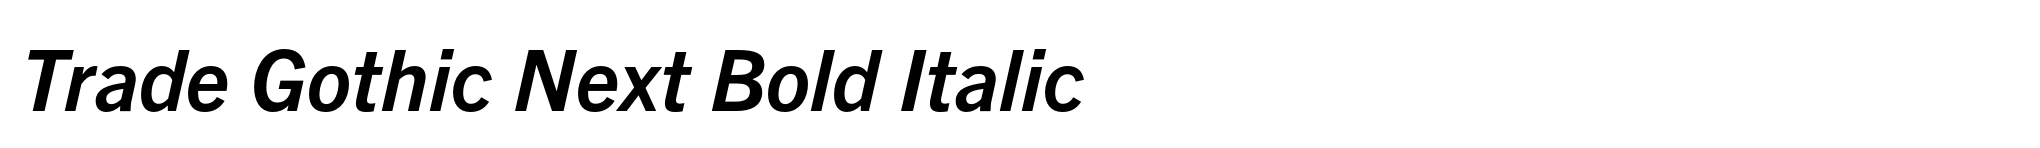 Trade Gothic Next Bold Italic image